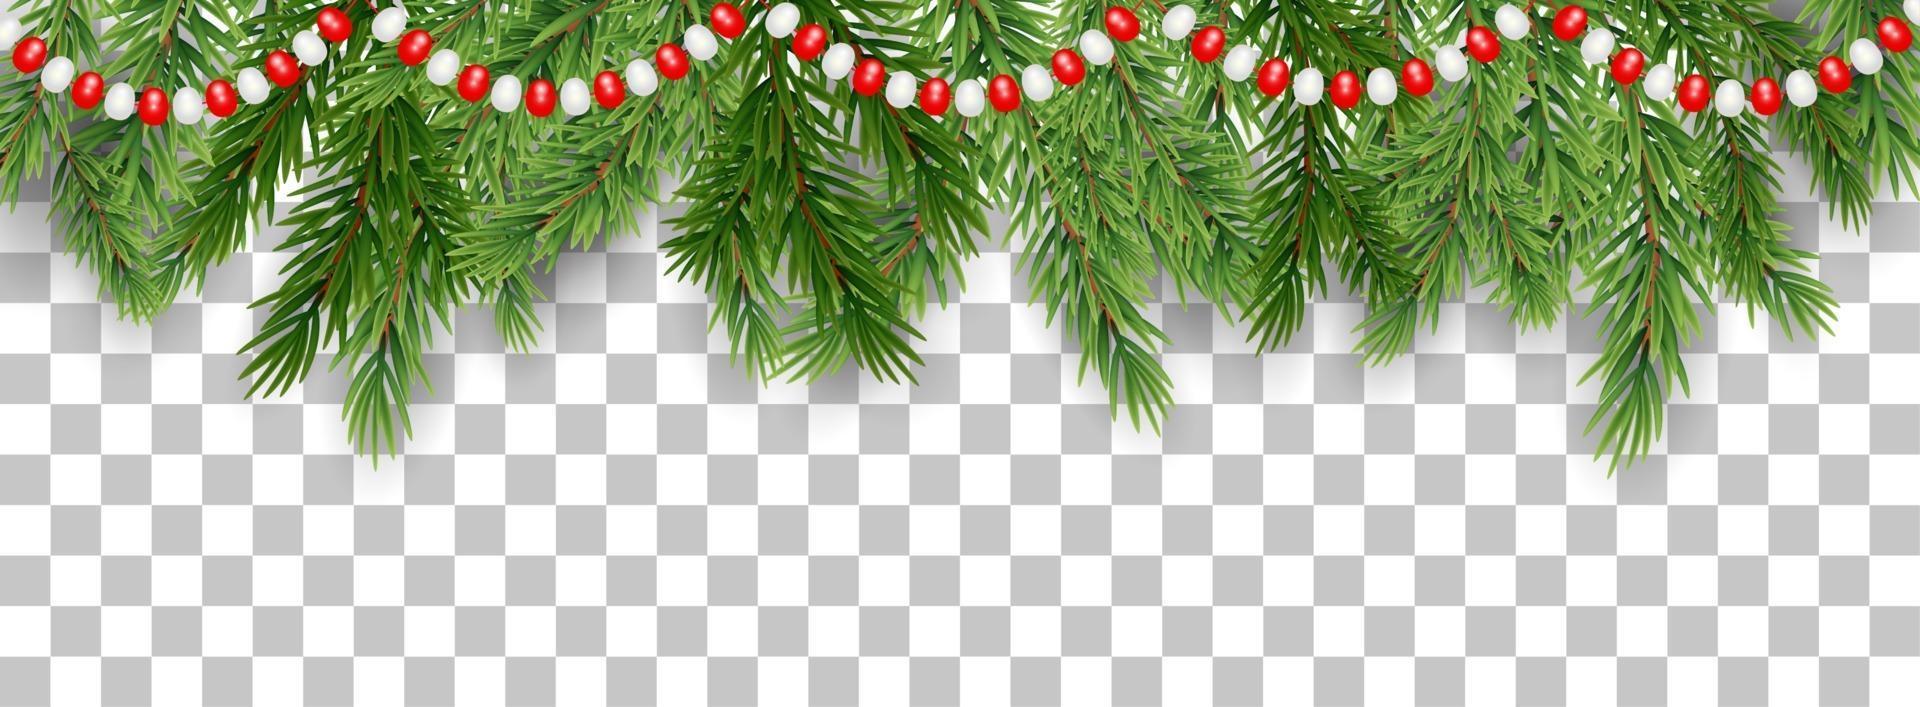 god jul och gott nytt år gränsen för trädgrenar och kranspärlor på transparent bakgrund. vektor illustration